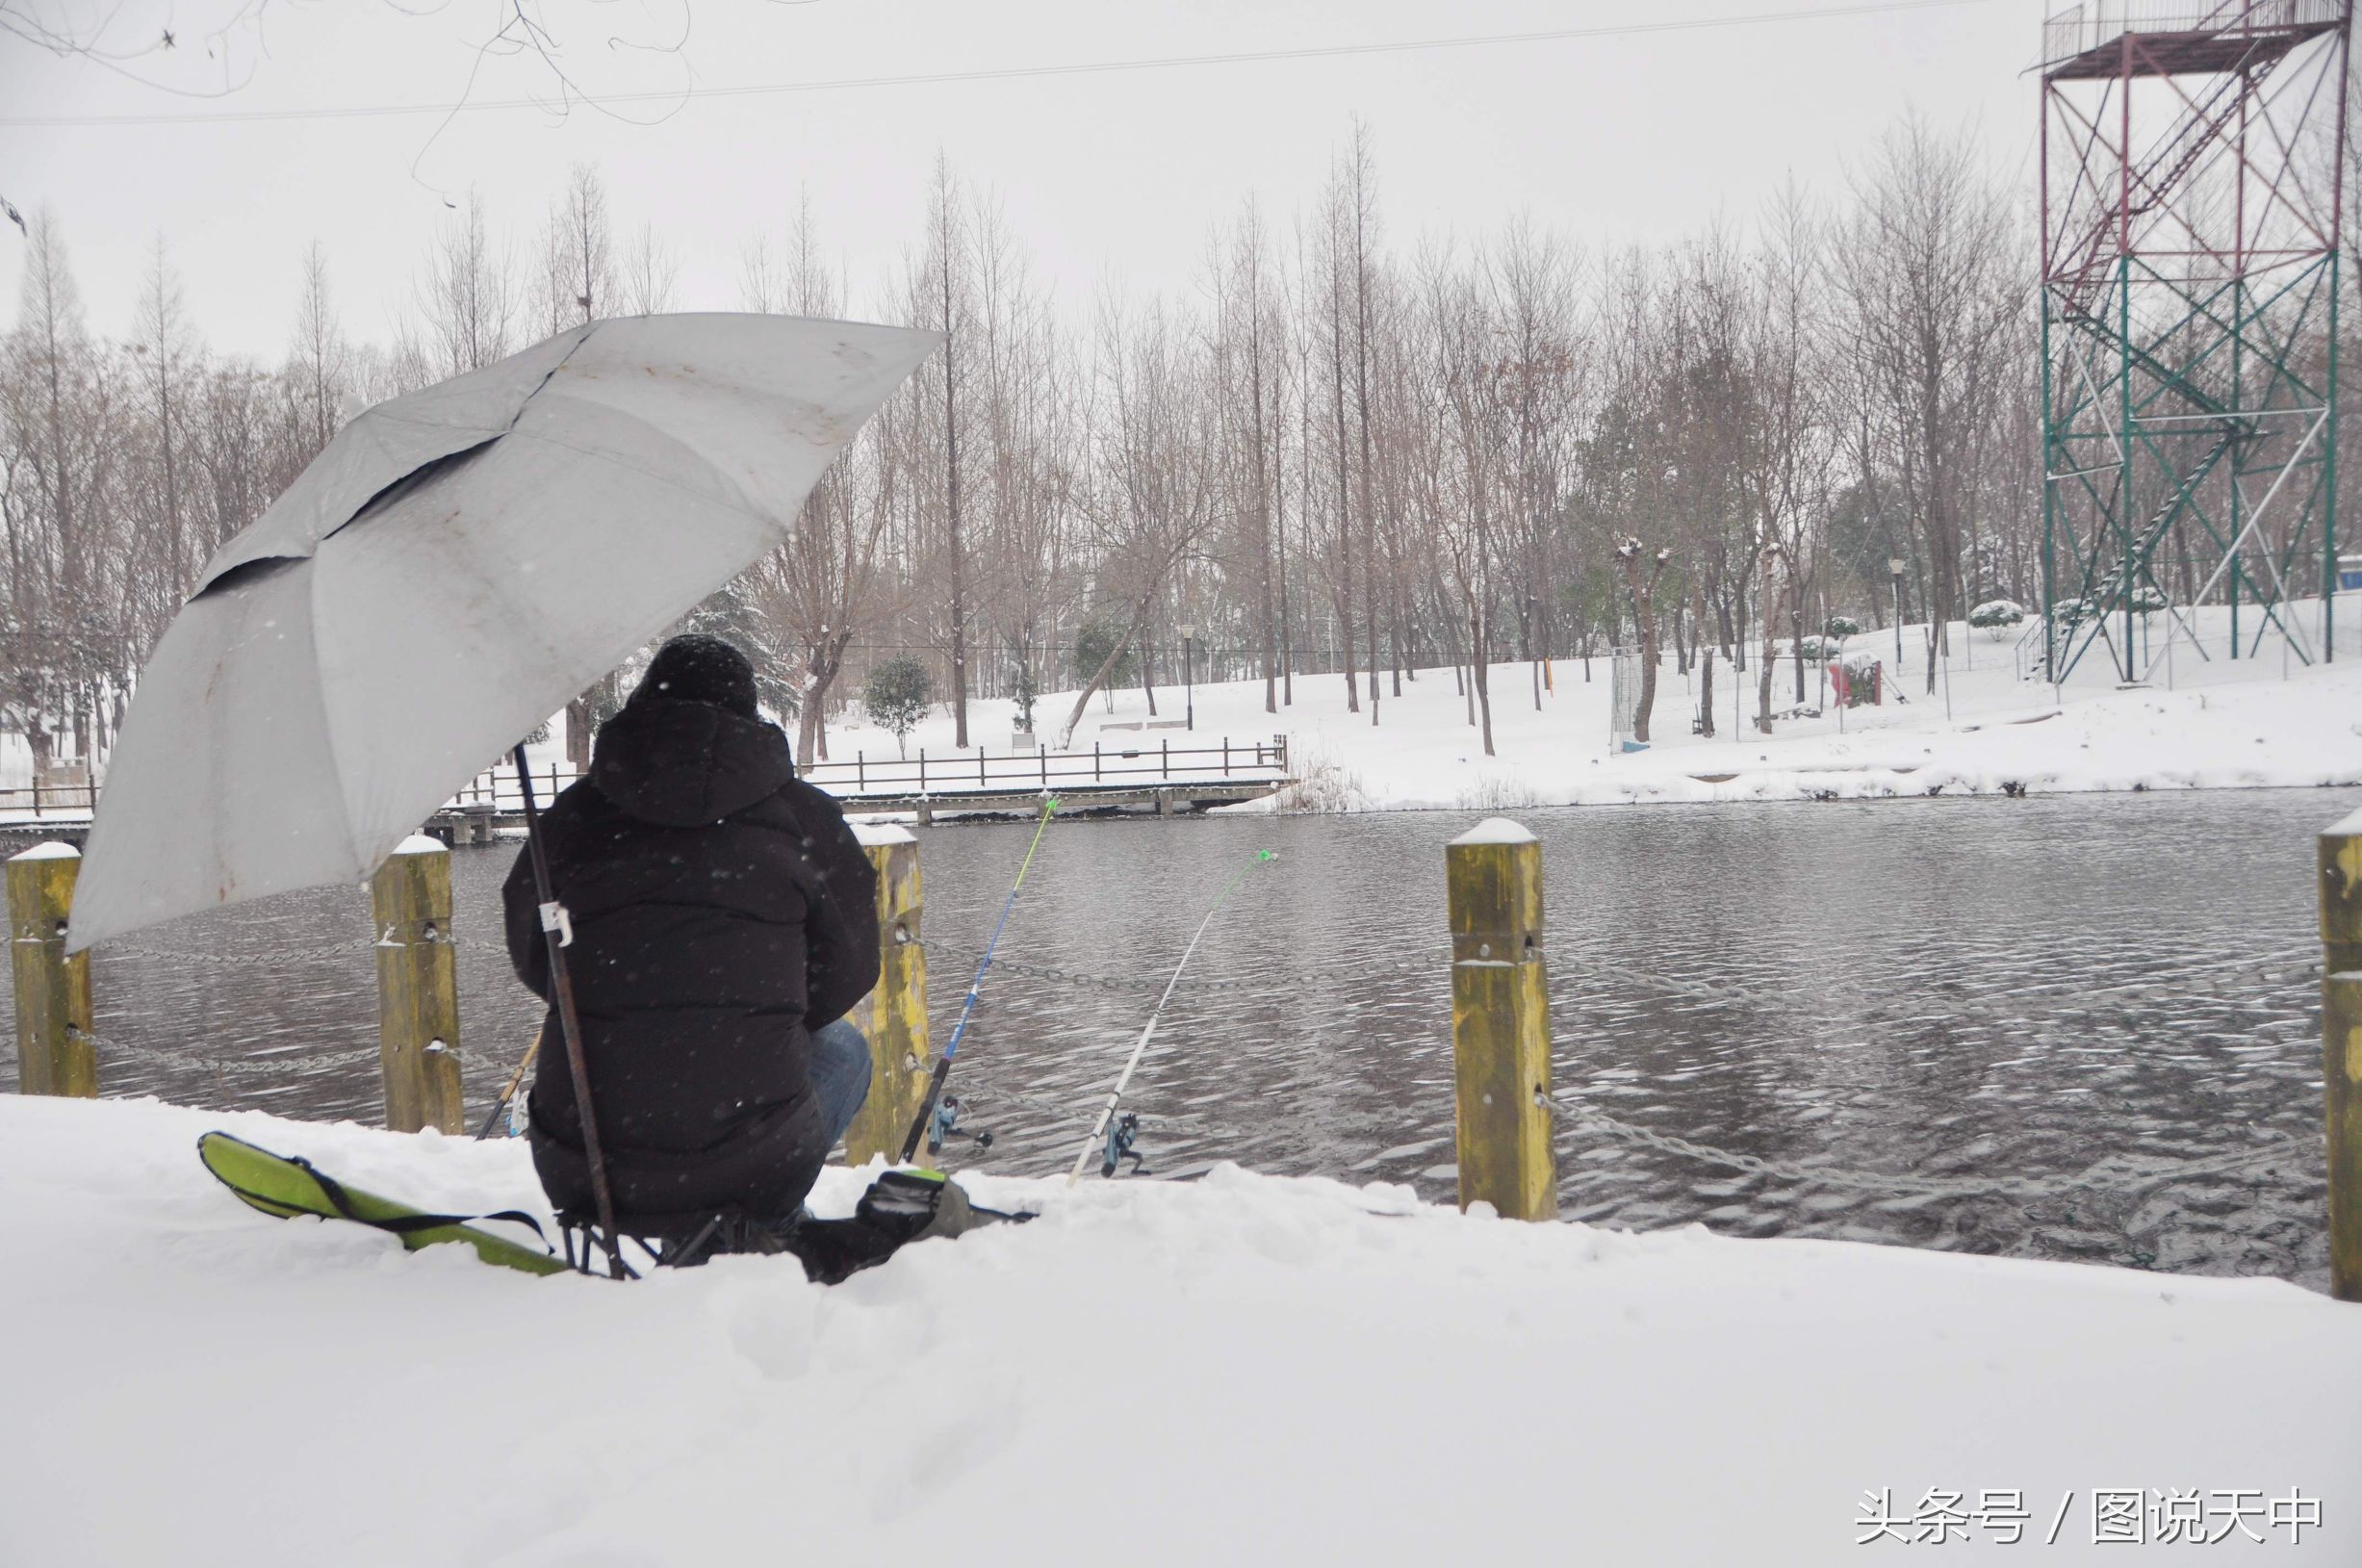 骨灰级渔友雪天公园里出钓 被人称作“神经病”风雪中坚守8个小时